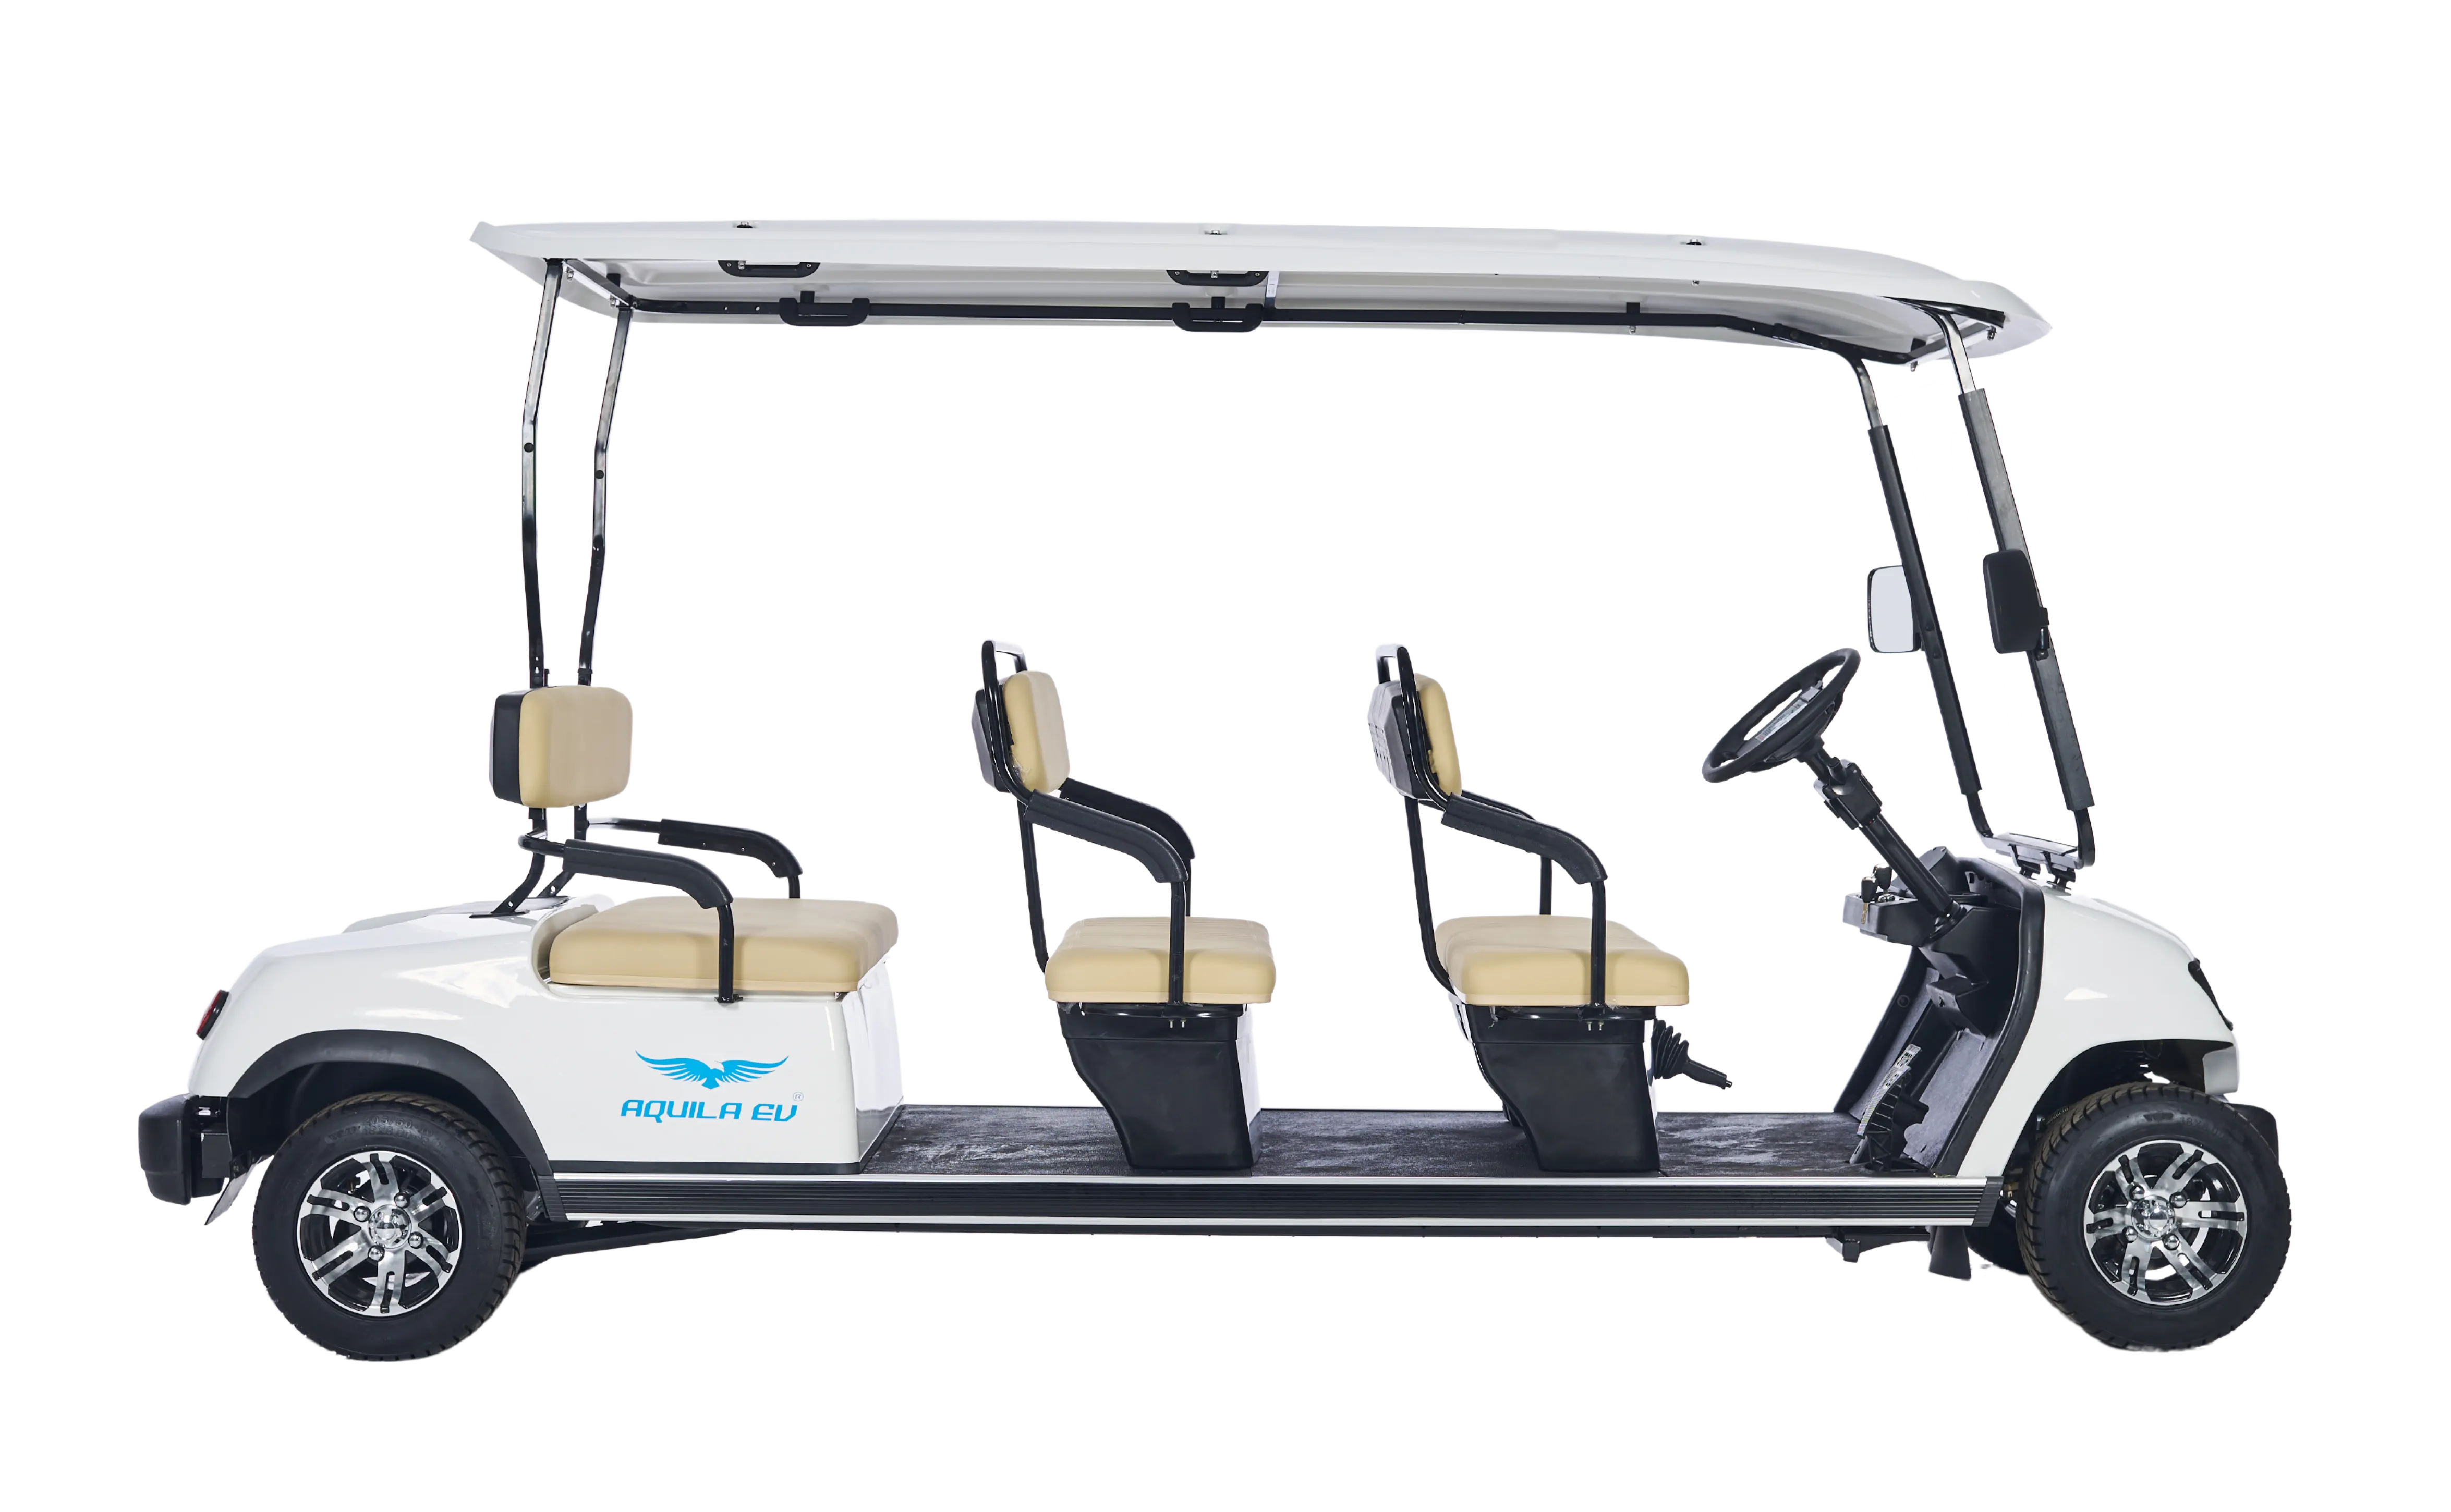  6 seater golf cart - Tri Electric